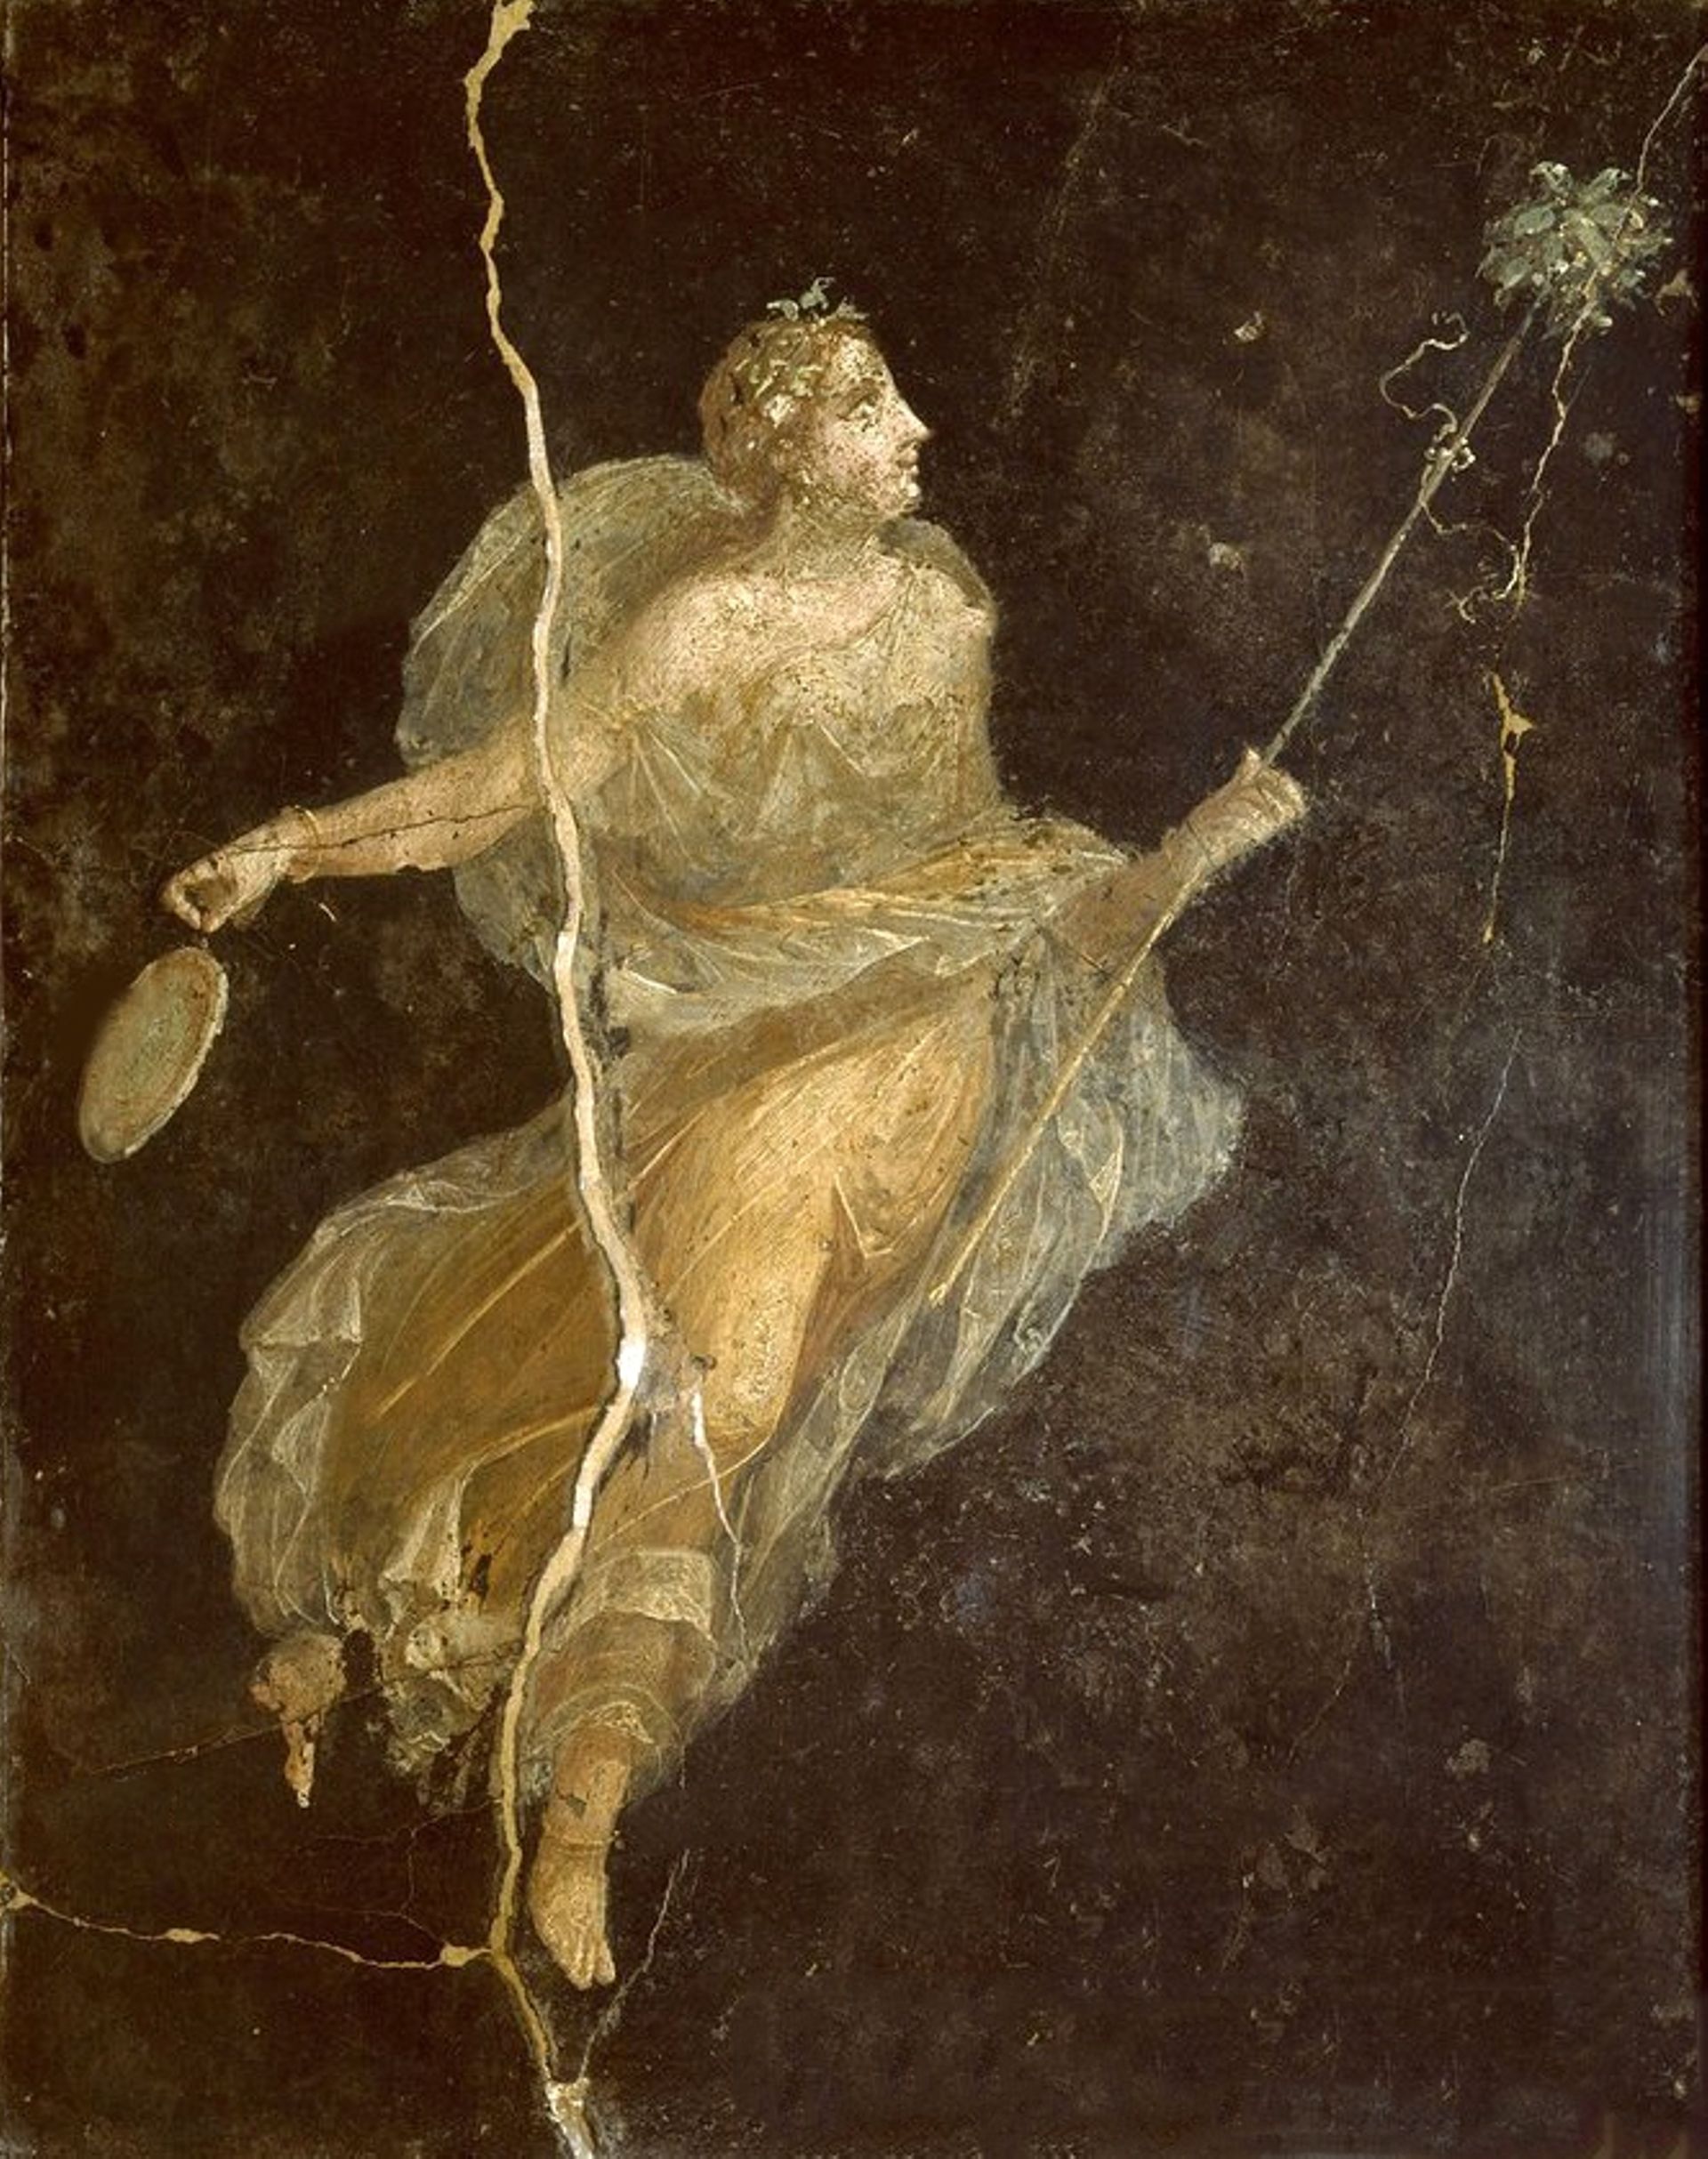 Fresque datant du 1er siècle ap J.C., retrouvée dans la Casa del Naviglio à Pompeii, et représentant un personnage vétu de soie.